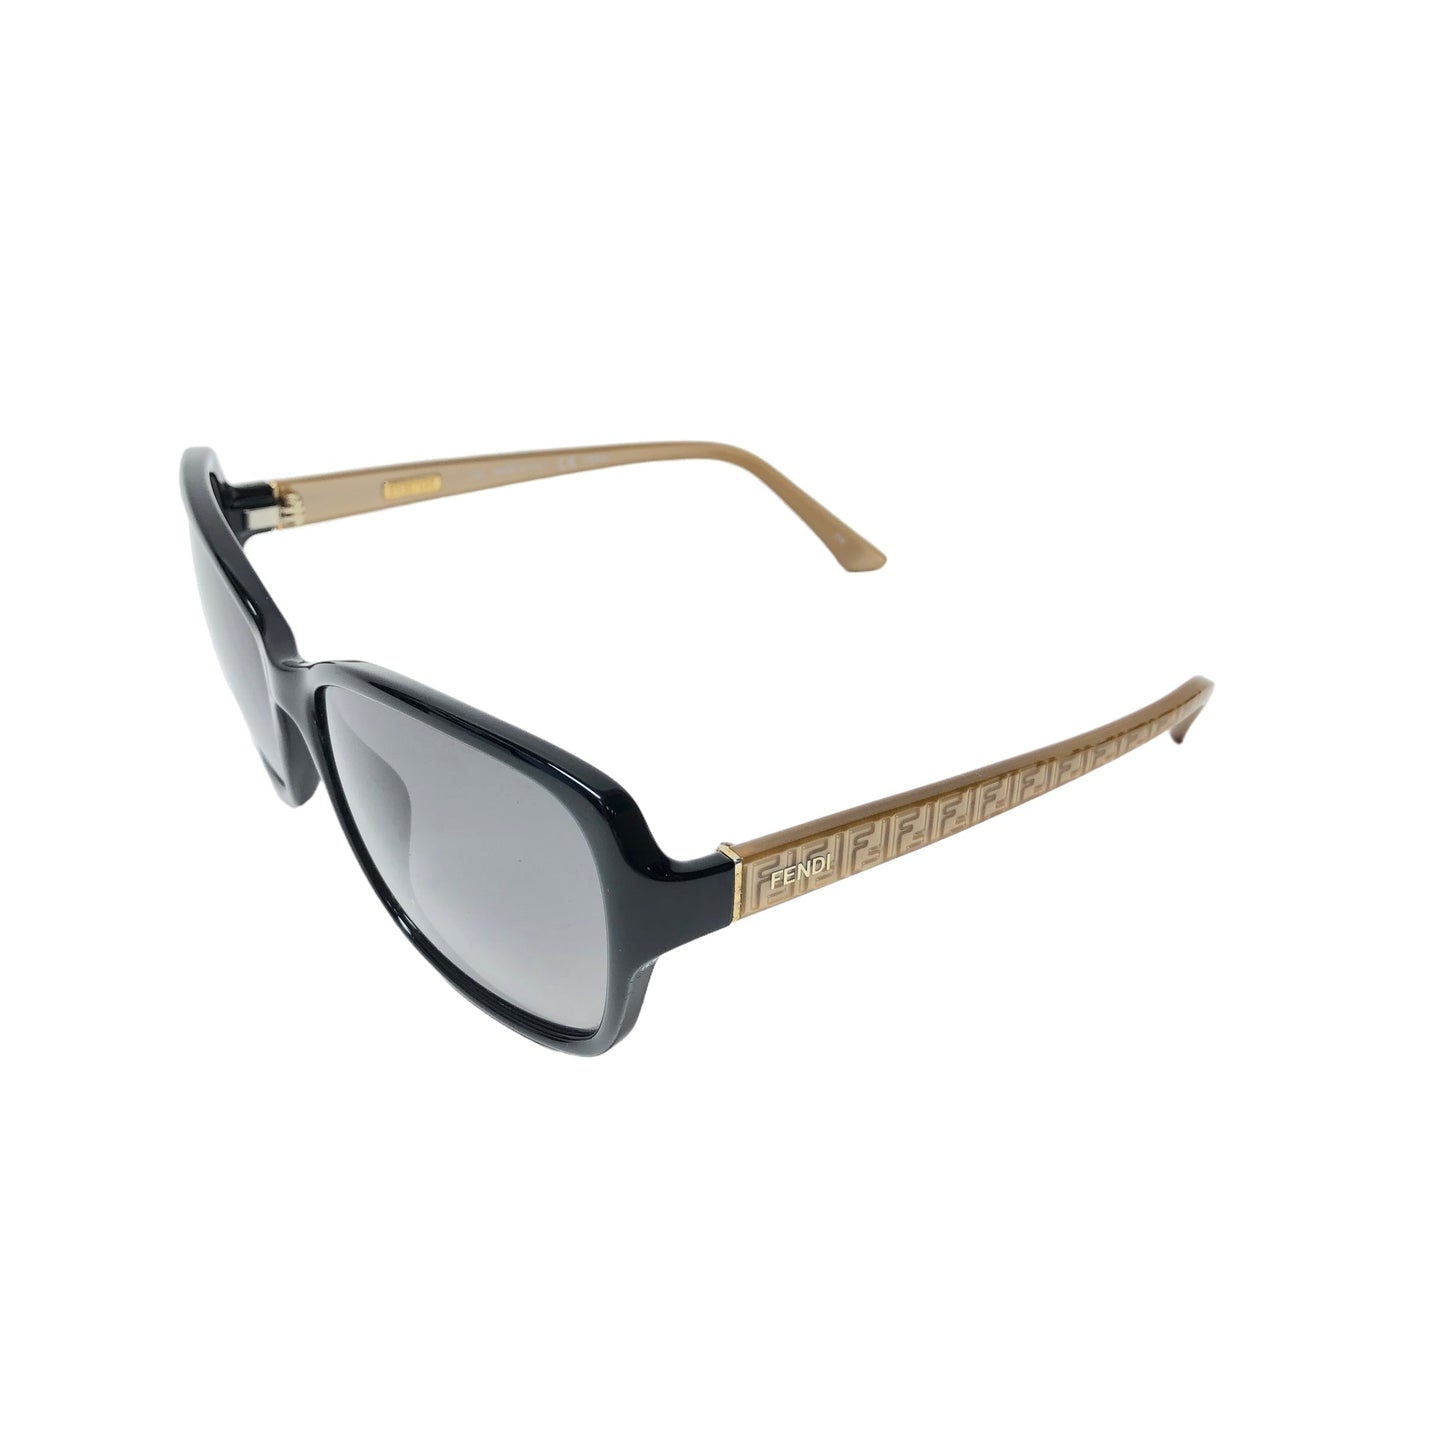 Sunglasses Luxury Designer Fendi